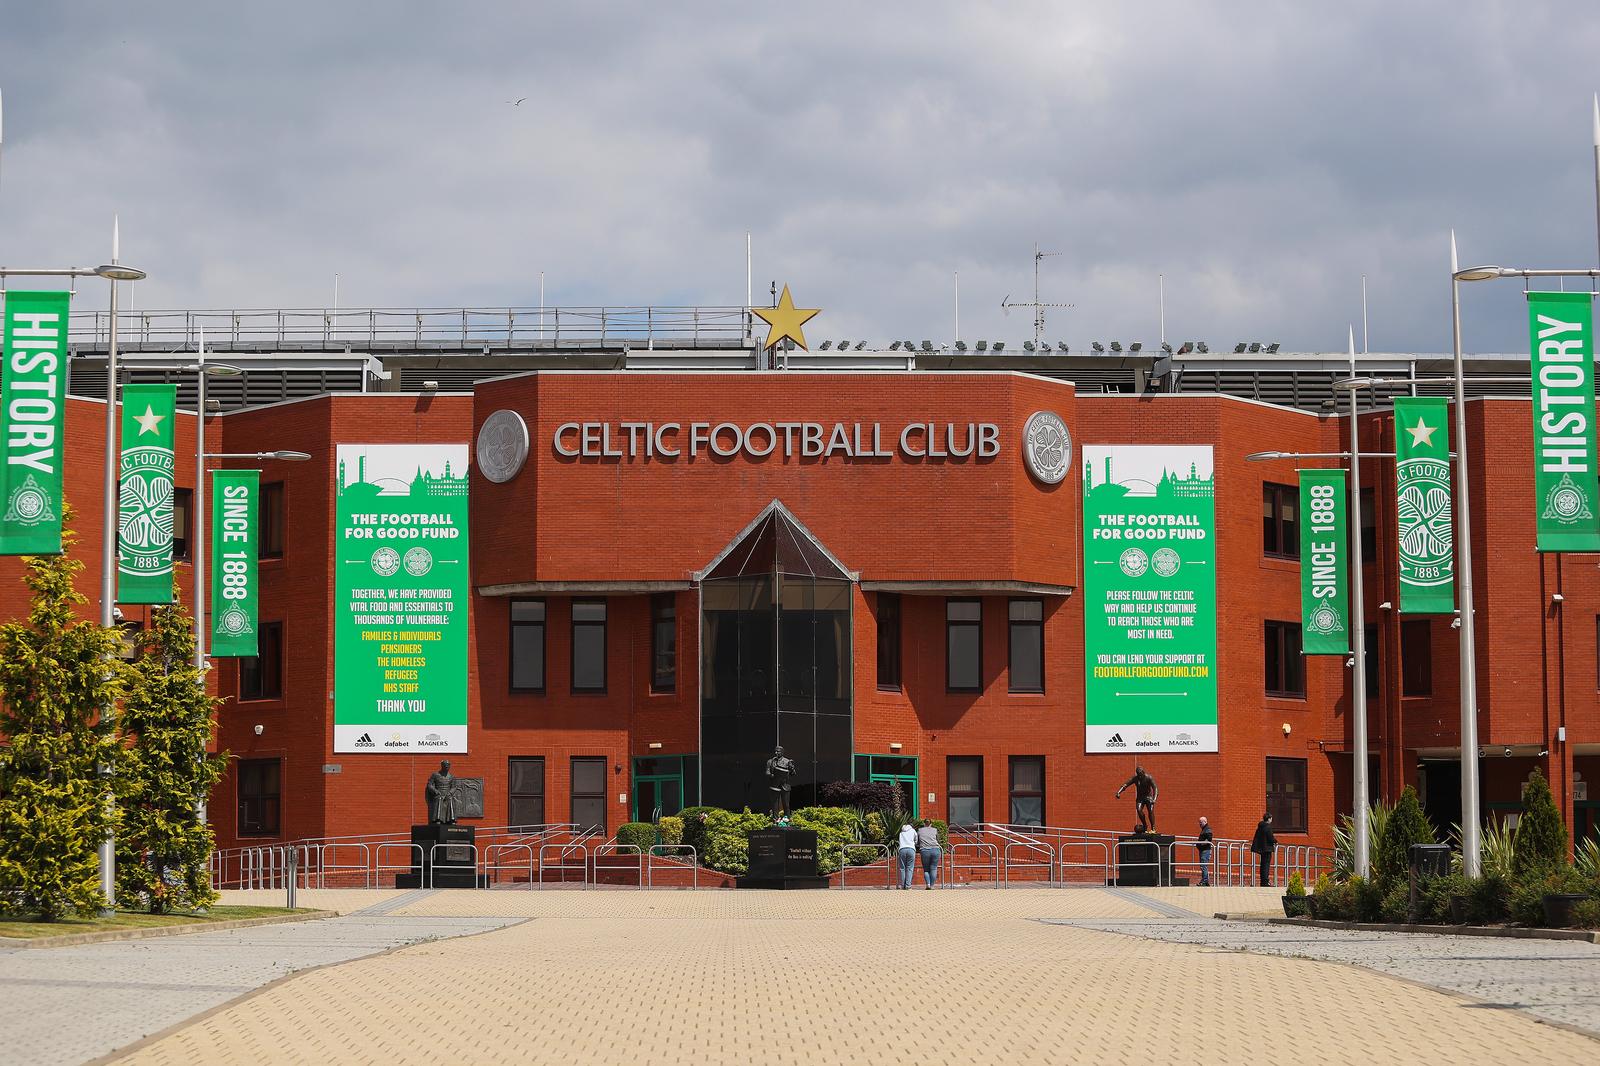 21.06.2021., Glasgow, Skotska - Celtic Park je nogometni stadion u Glasgowu na kojem svoje domace utakmice igra FC Celtic. Arhitekt stadiona je Duncan and Kerr. Stadion ima kapacitet od 60335 mjesta i najveci je u Skotskoj, a sedmi najveci u Ujedinjenom Kraljevstvu. Na Celtic Parku se igraju domace utakmice Skotske nogometne reprezentacije i finala skotskih kupova, kad se ne moze igrati na stadionu Hampden Park. Na Celtic Parku se takodjer odrzavaju koncerti i ostali sportski dogadjaji. Photo: Luka Stanzl/PIXSELL